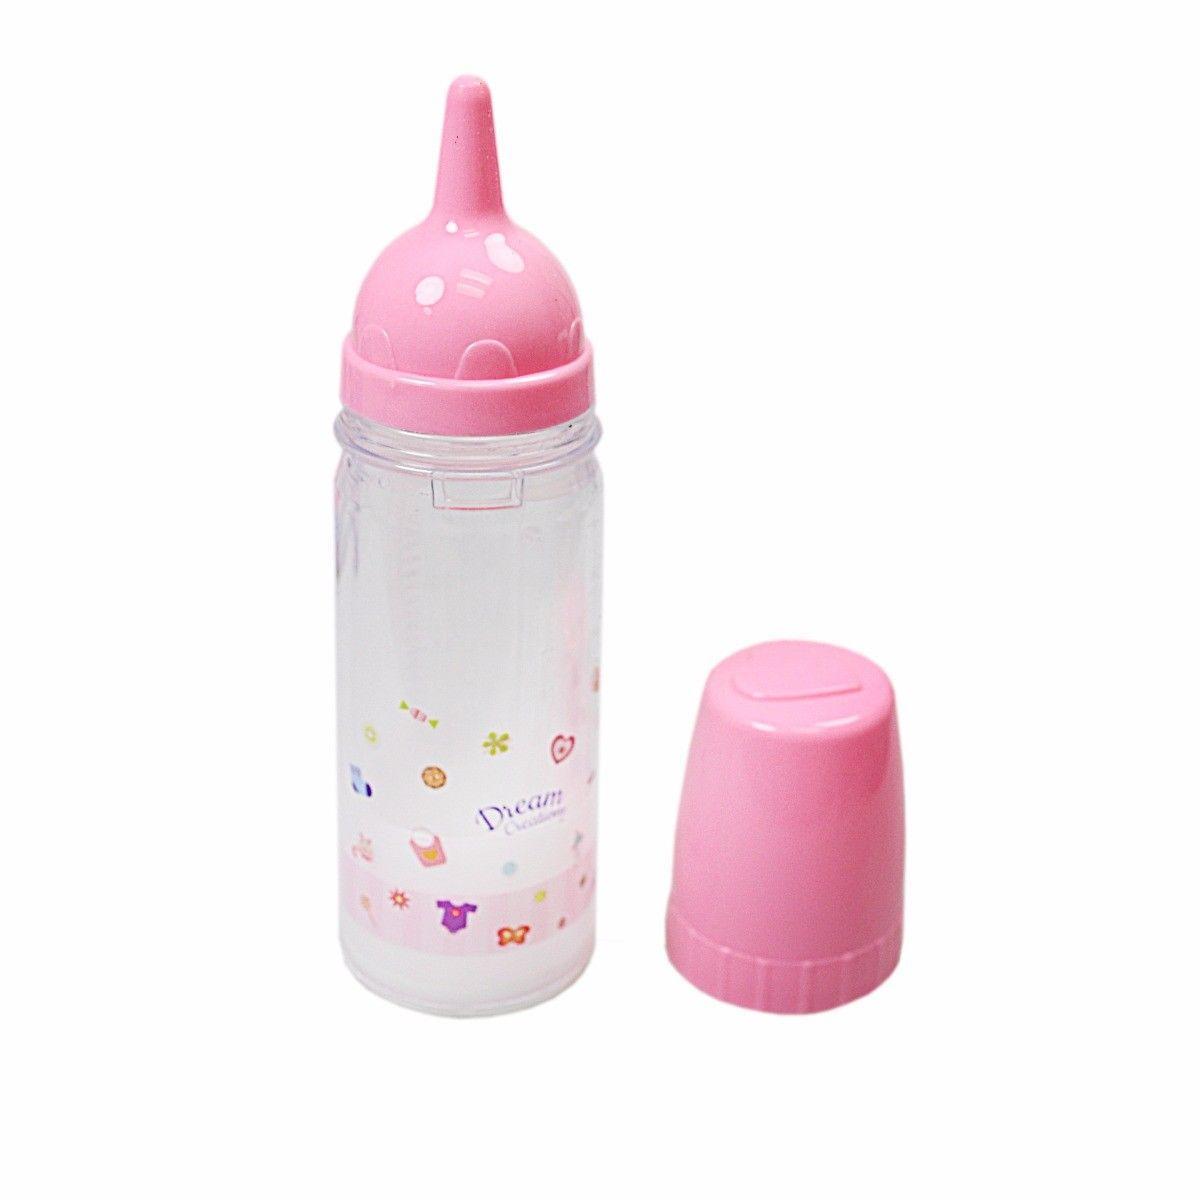 Children's Toy Magic Baby Doll Bottle H14.5 x D4.3 x W4.3 cm 1371943 A (Parcel Rate)